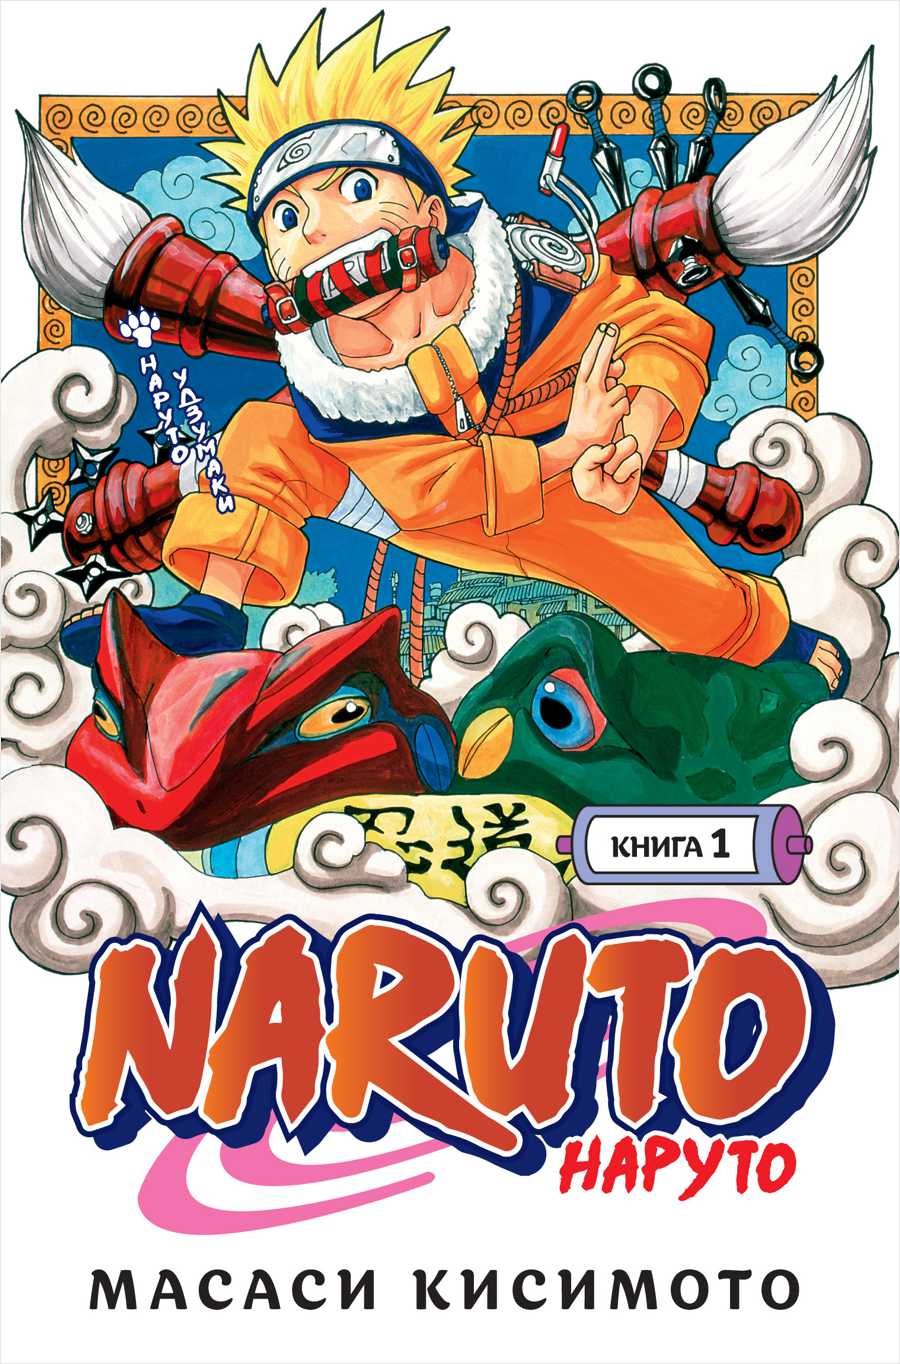 Манга Naruto. Наруто – Наруто Удзумаки. Книга 1 от 1С Интерес